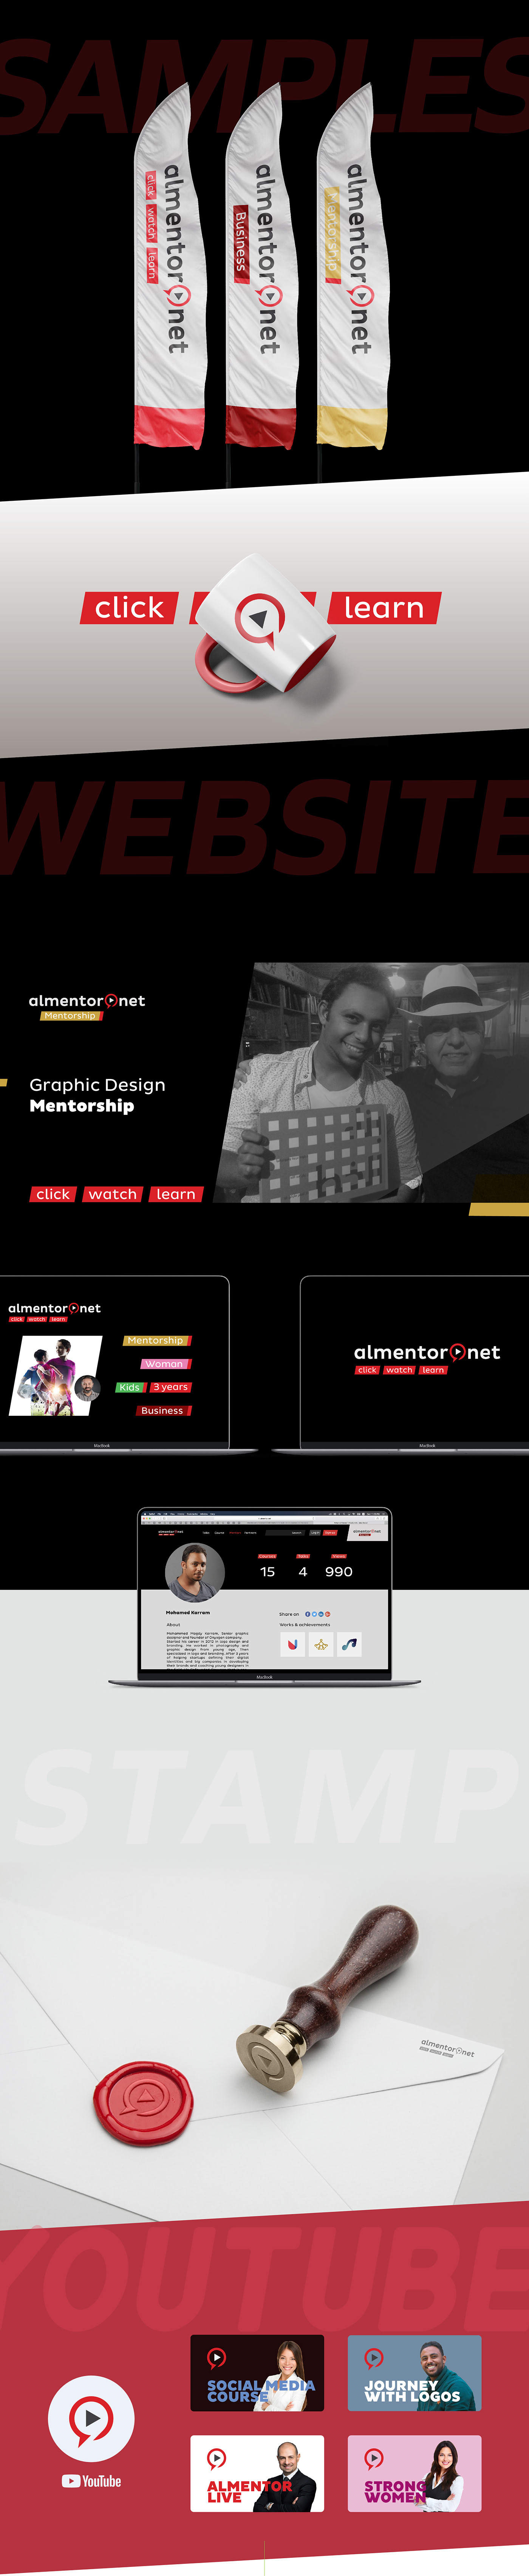 almentor brand dubai Golden Ratio icons logo Rebrand sublogos Web